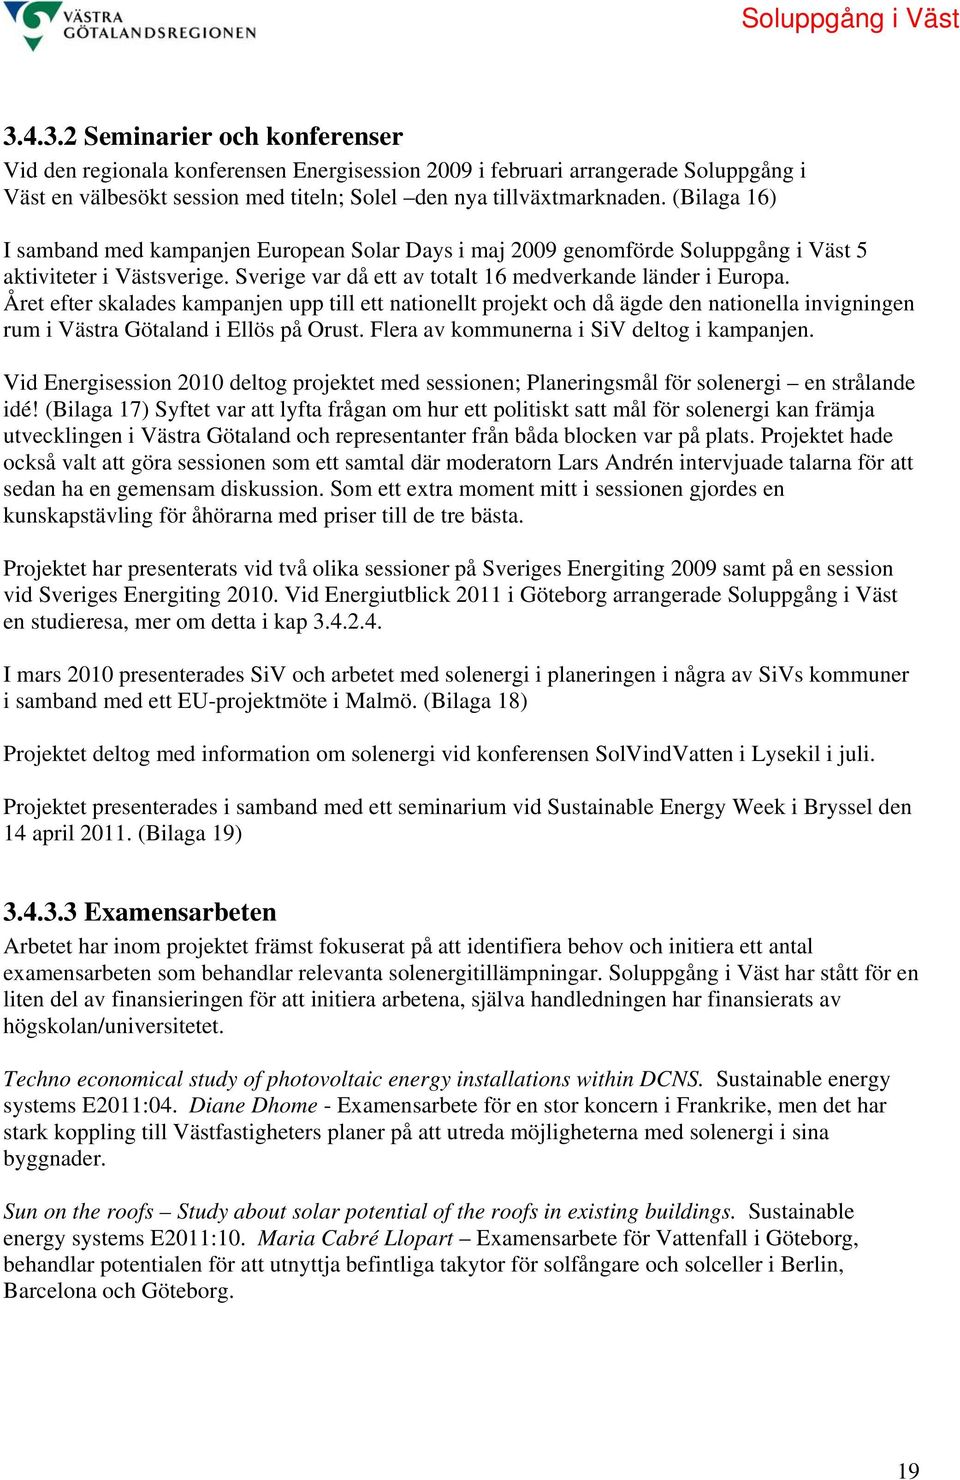 Året efter skalades kampanjen upp till ett nationellt projekt och då ägde den nationella invigningen rum i Västra Götaland i Ellös på Orust. Flera av kommunerna i SiV deltog i kampanjen.